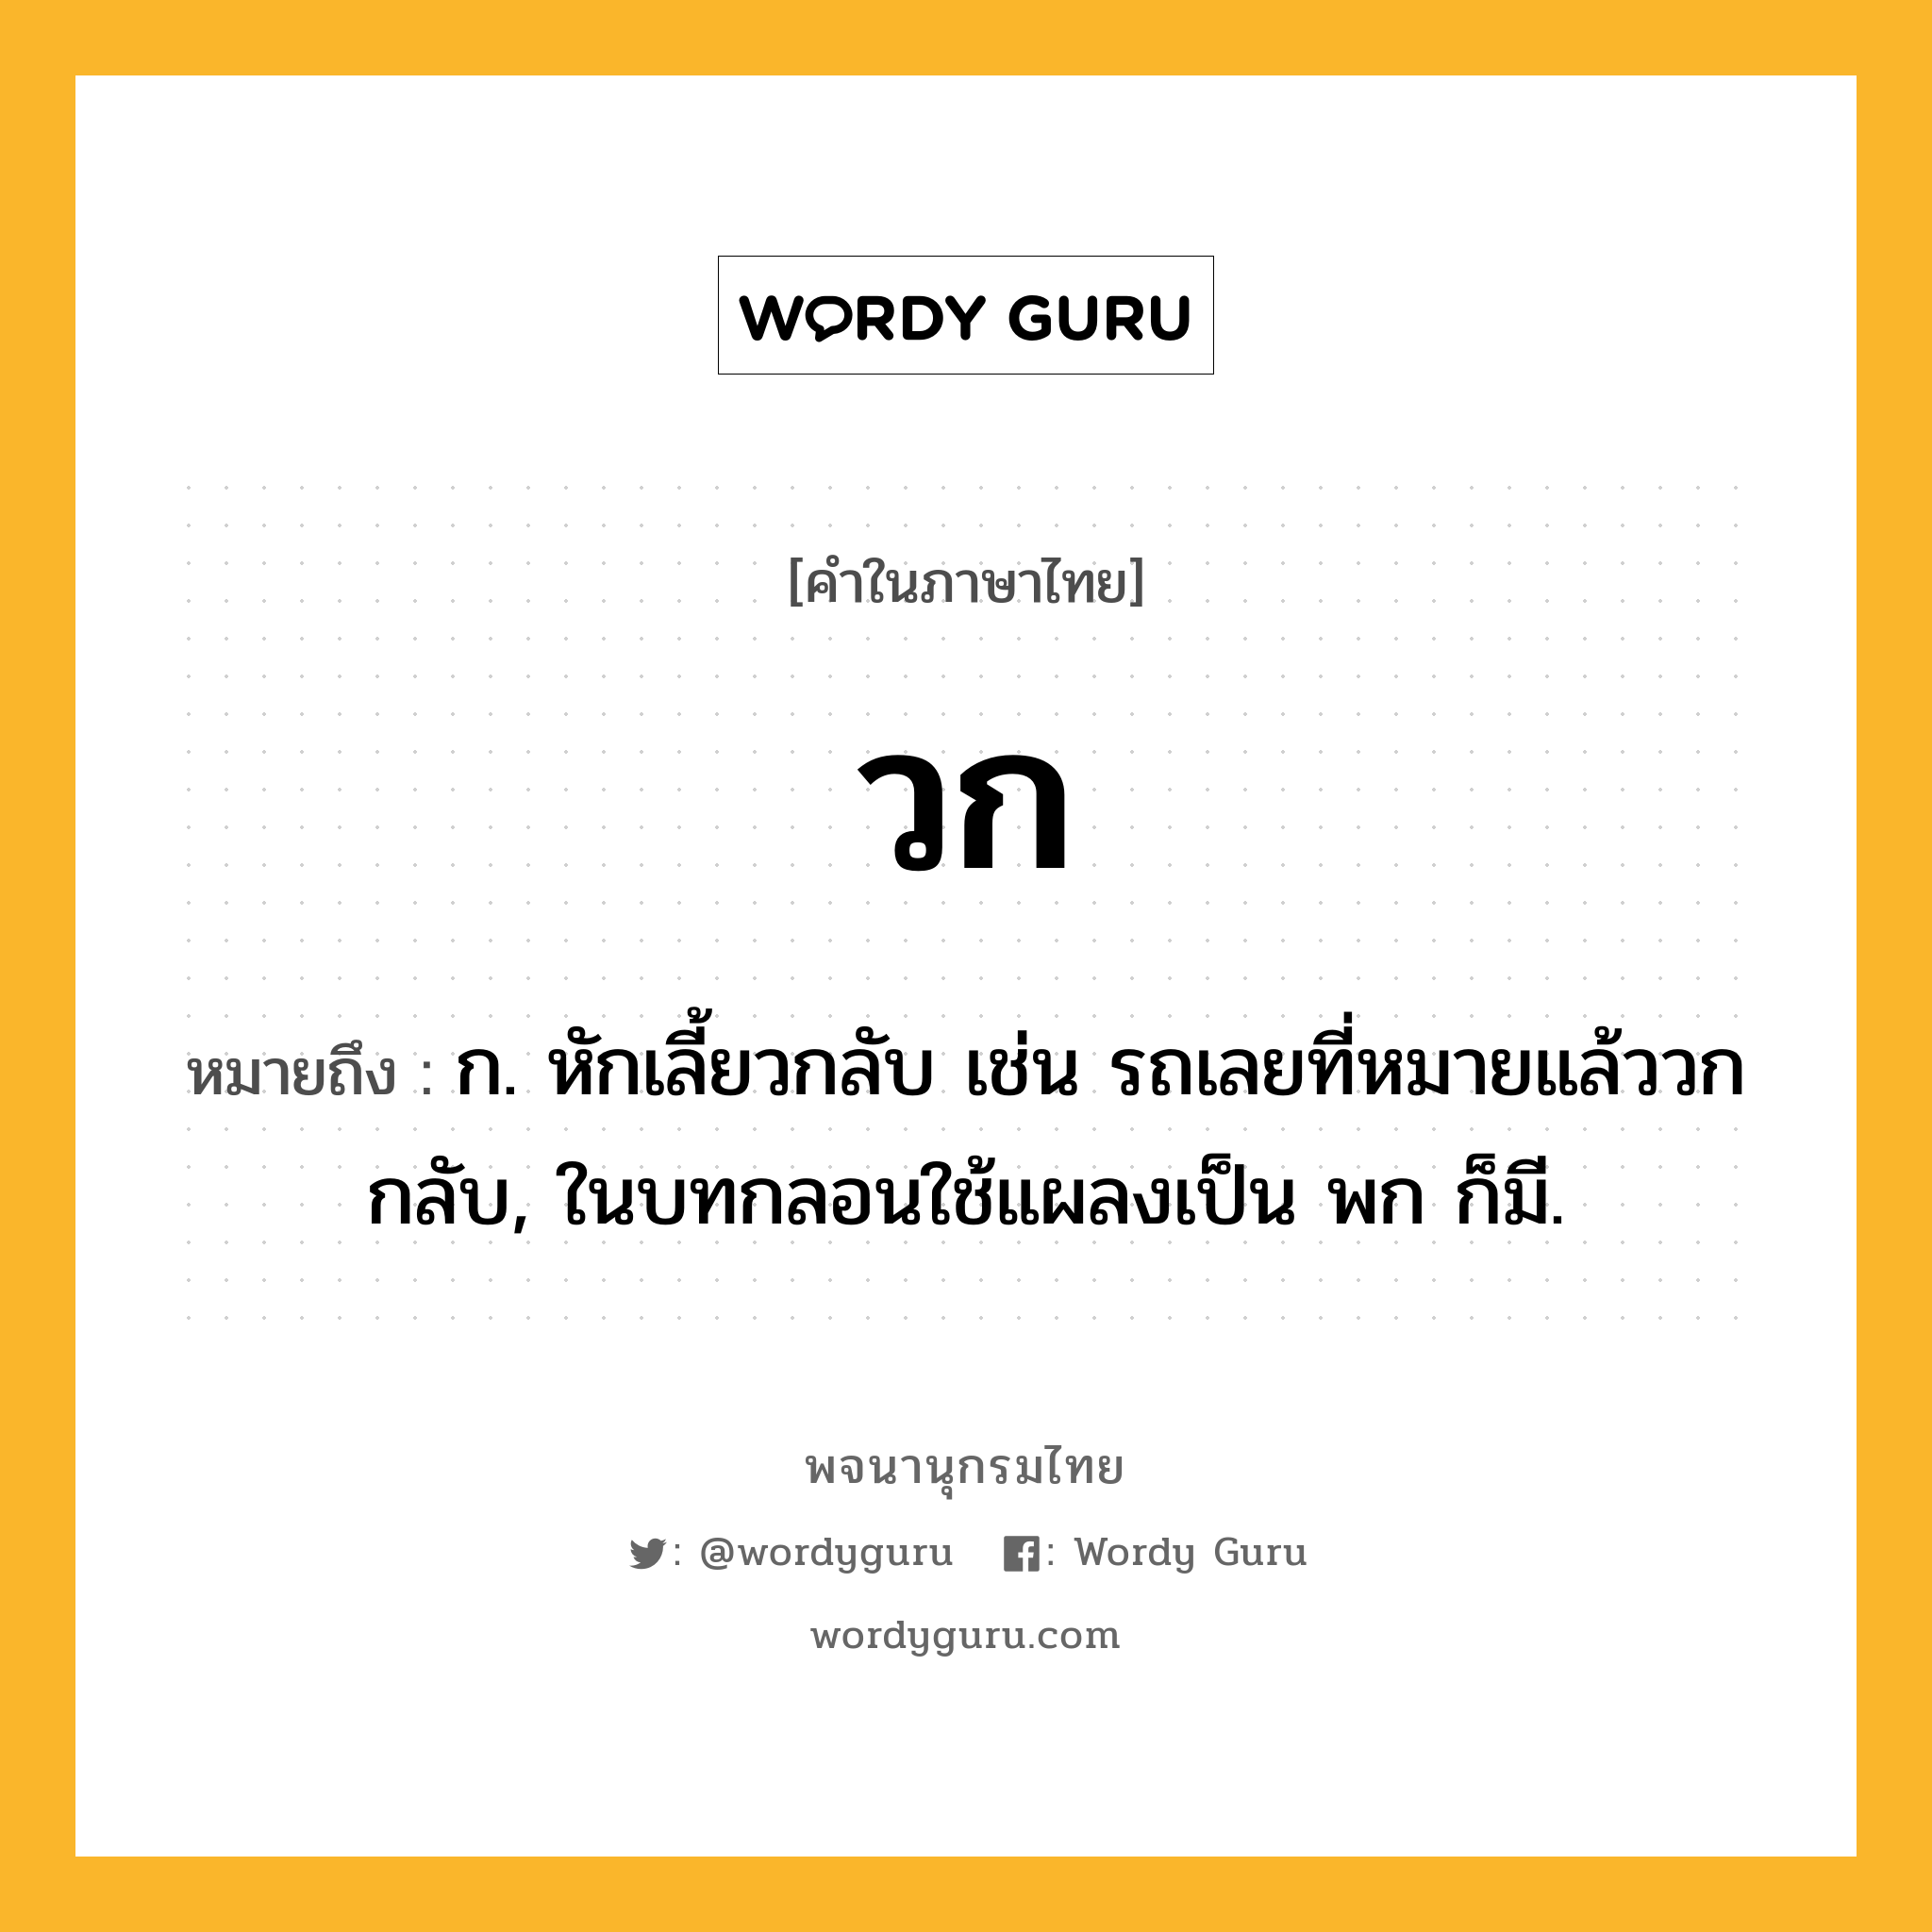 วก ความหมาย หมายถึงอะไร?, คำในภาษาไทย วก หมายถึง ก. หักเลี้ยวกลับ เช่น รถเลยที่หมายแล้ววกกลับ, ในบทกลอนใช้แผลงเป็น พก ก็มี.